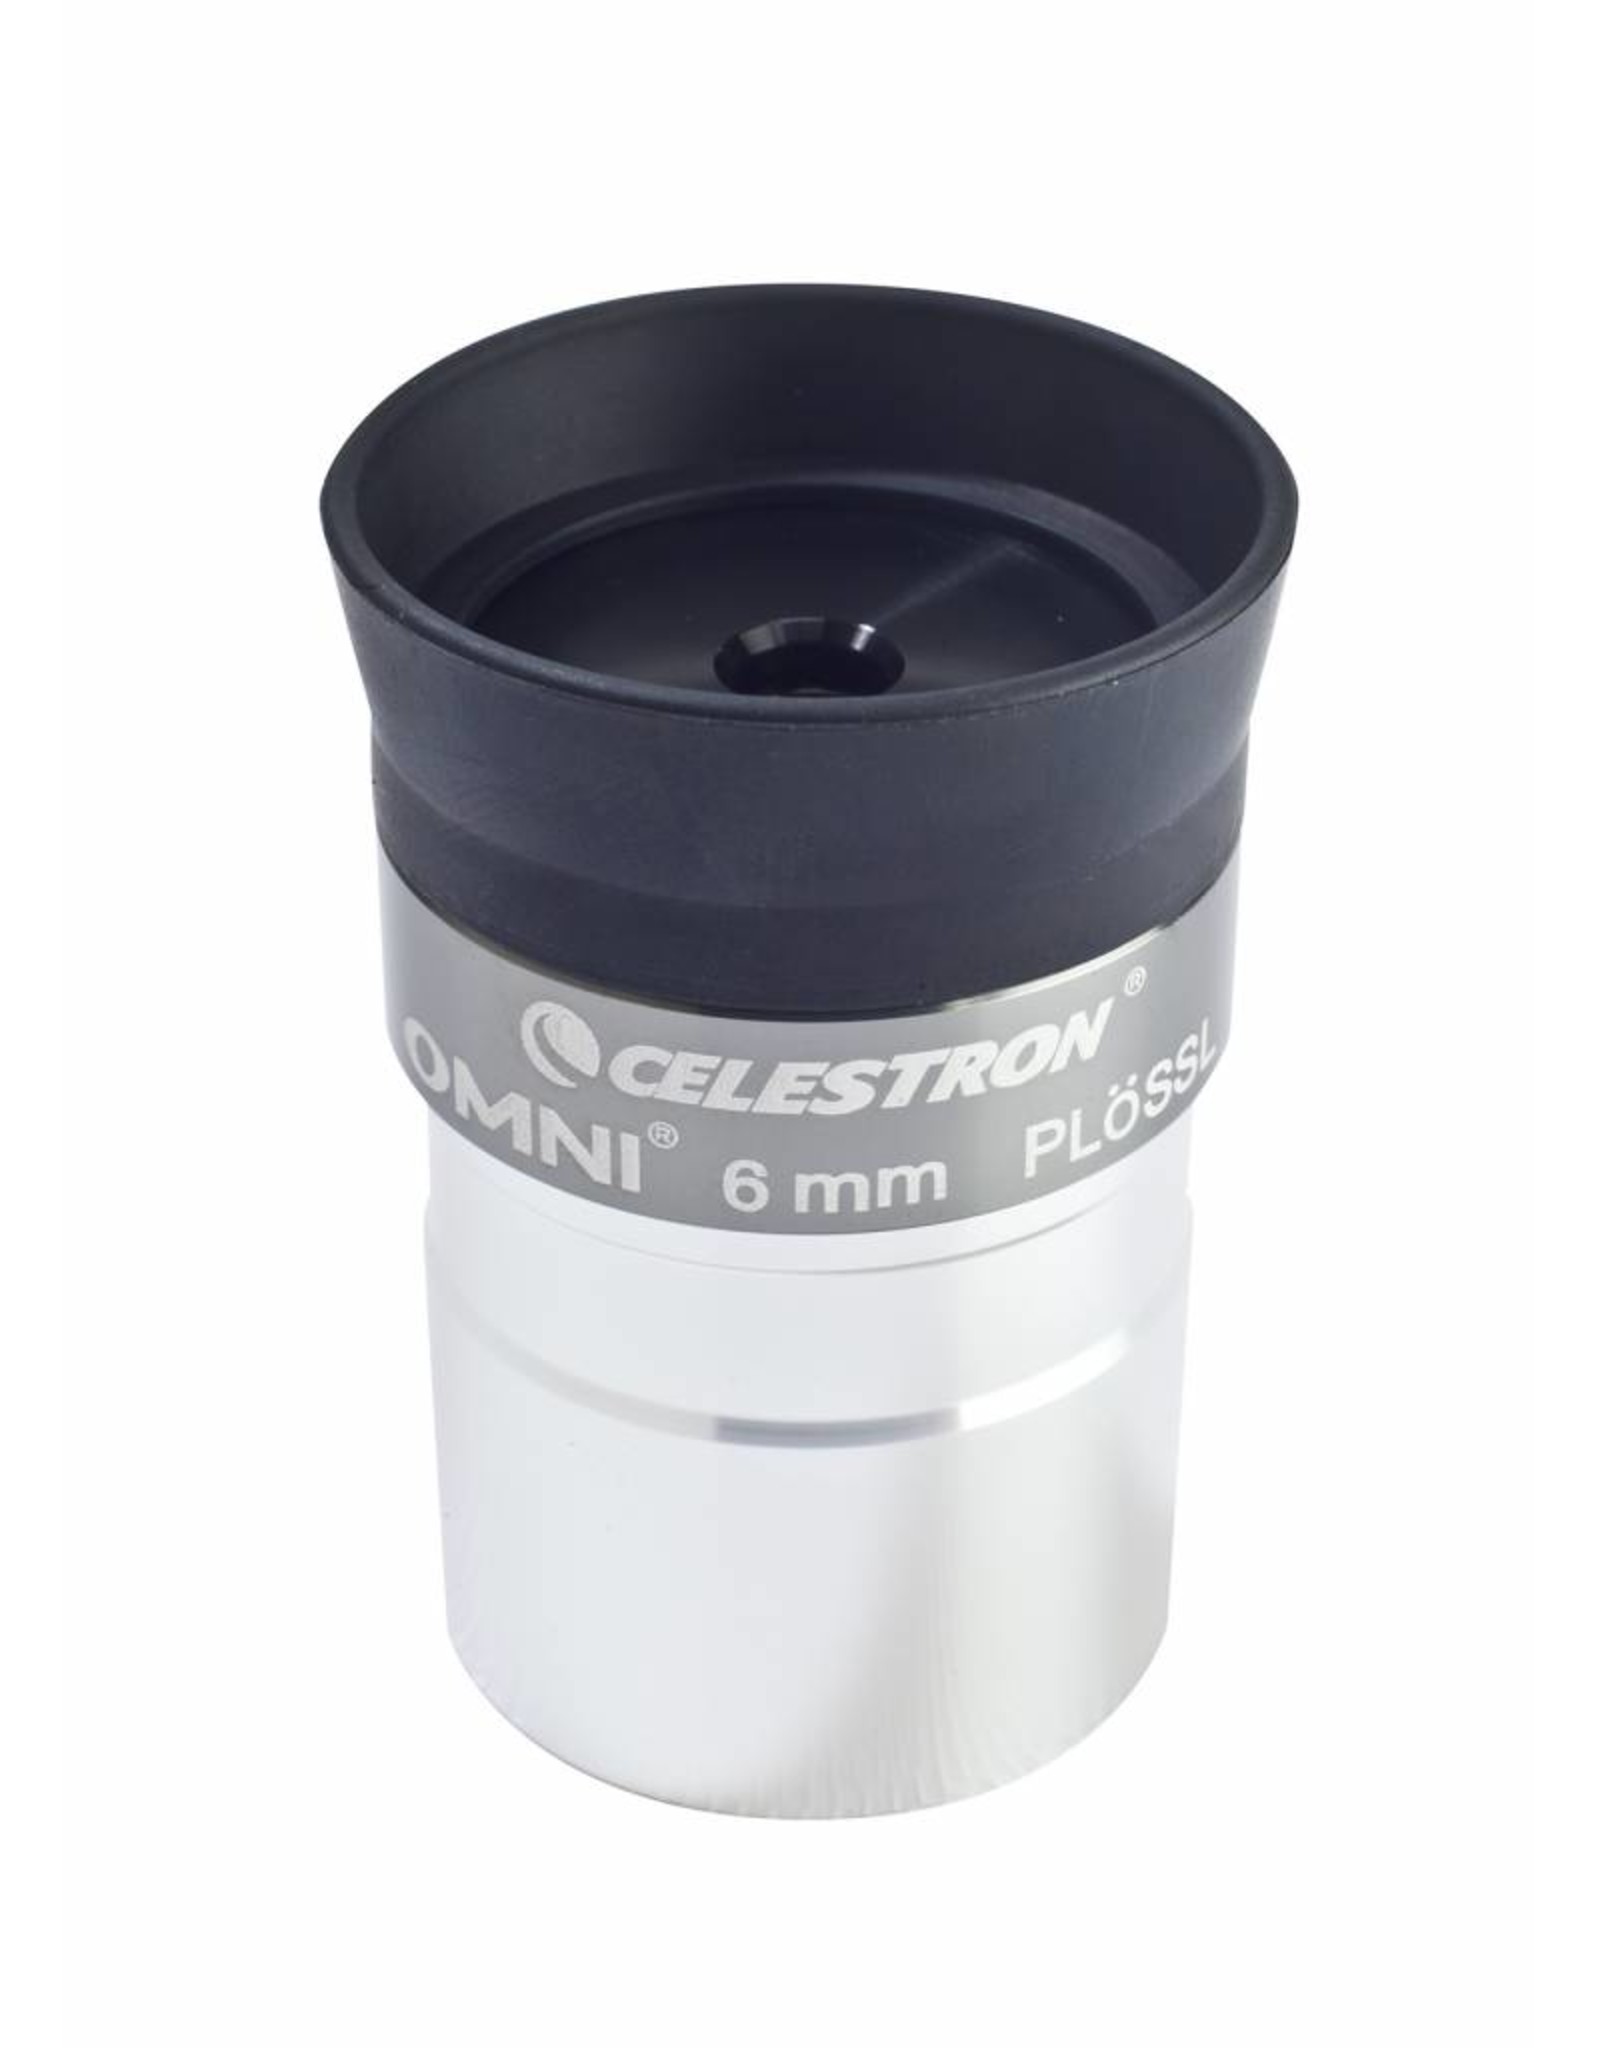 Celestron Celestron Omni Series 1.25 in - 6mm